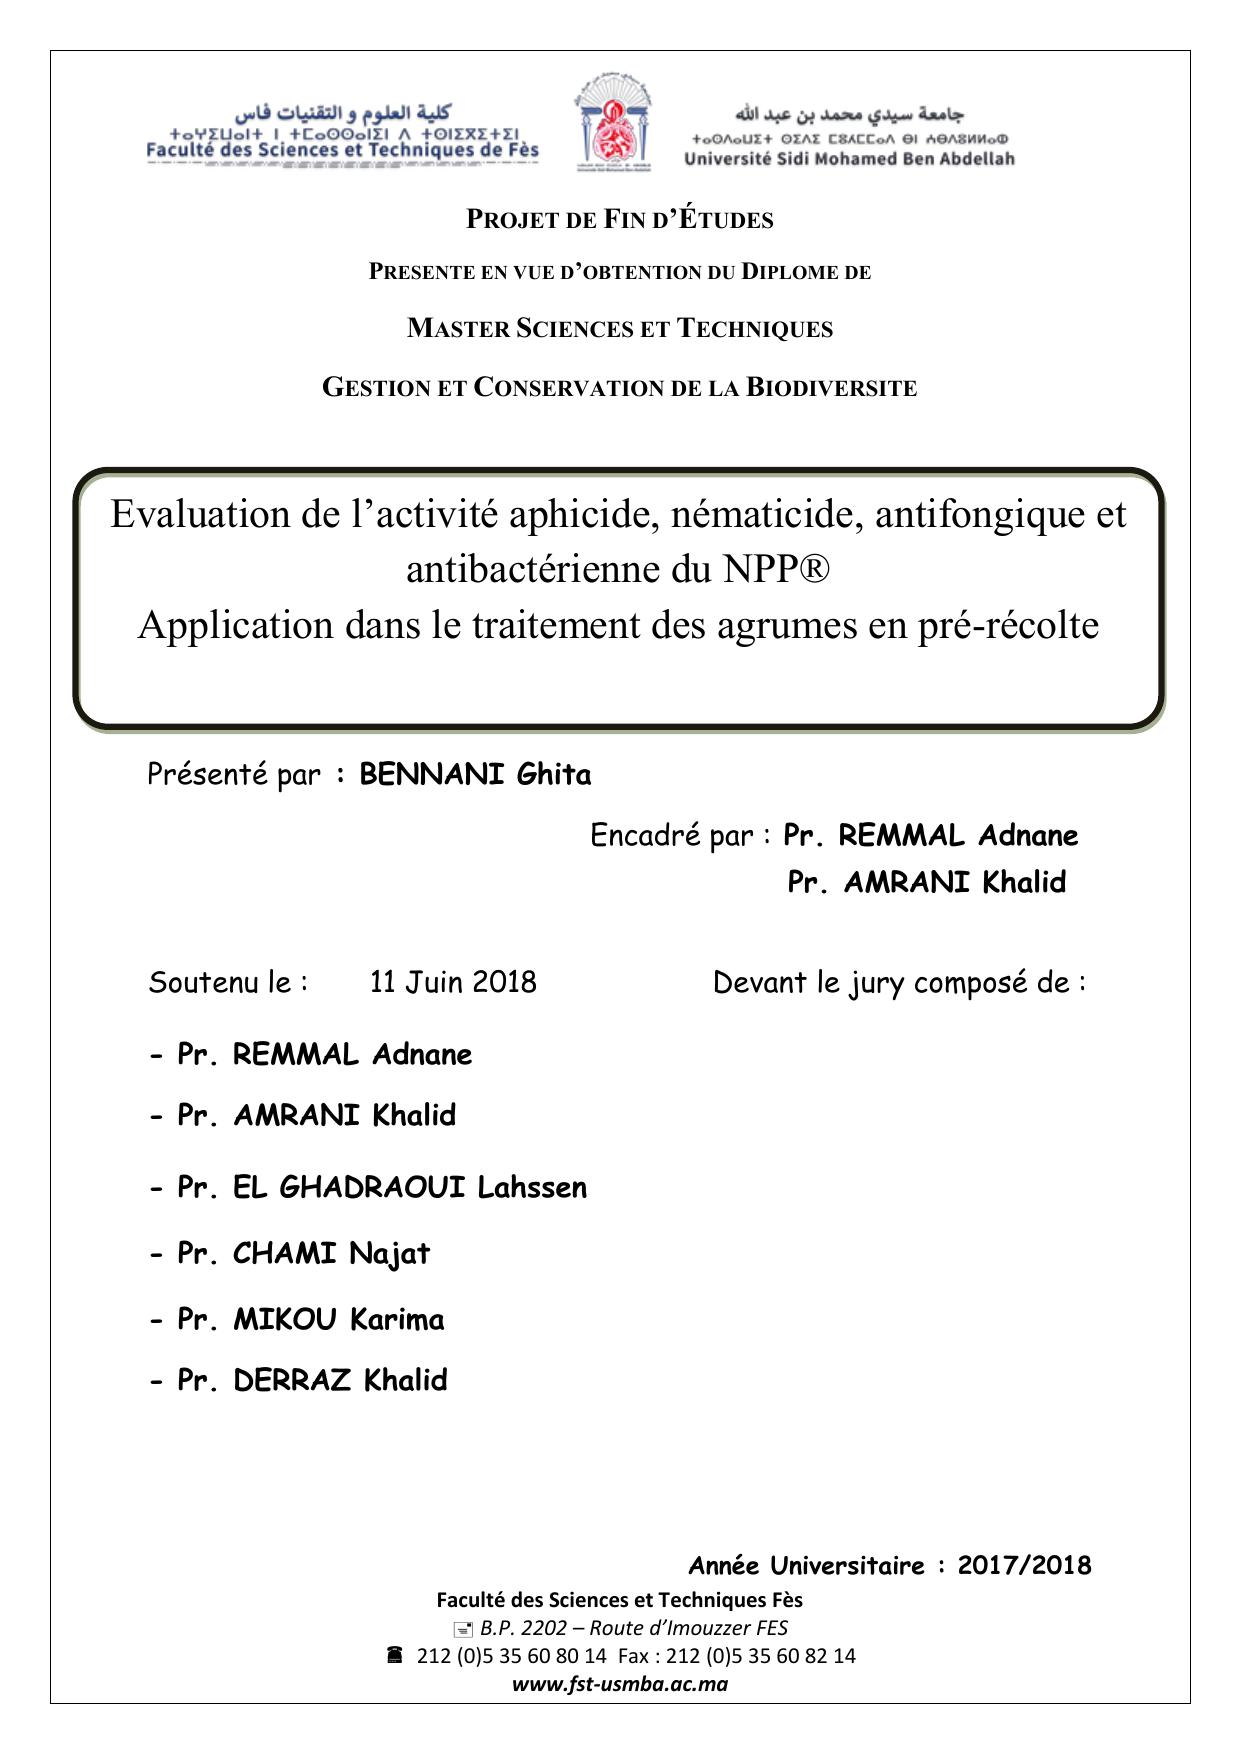 Evaluation de l’activité aphicide, nématicide, antifongique et antibactérienne du NPP® Application dans le traitement des agrumes en pré-récolte